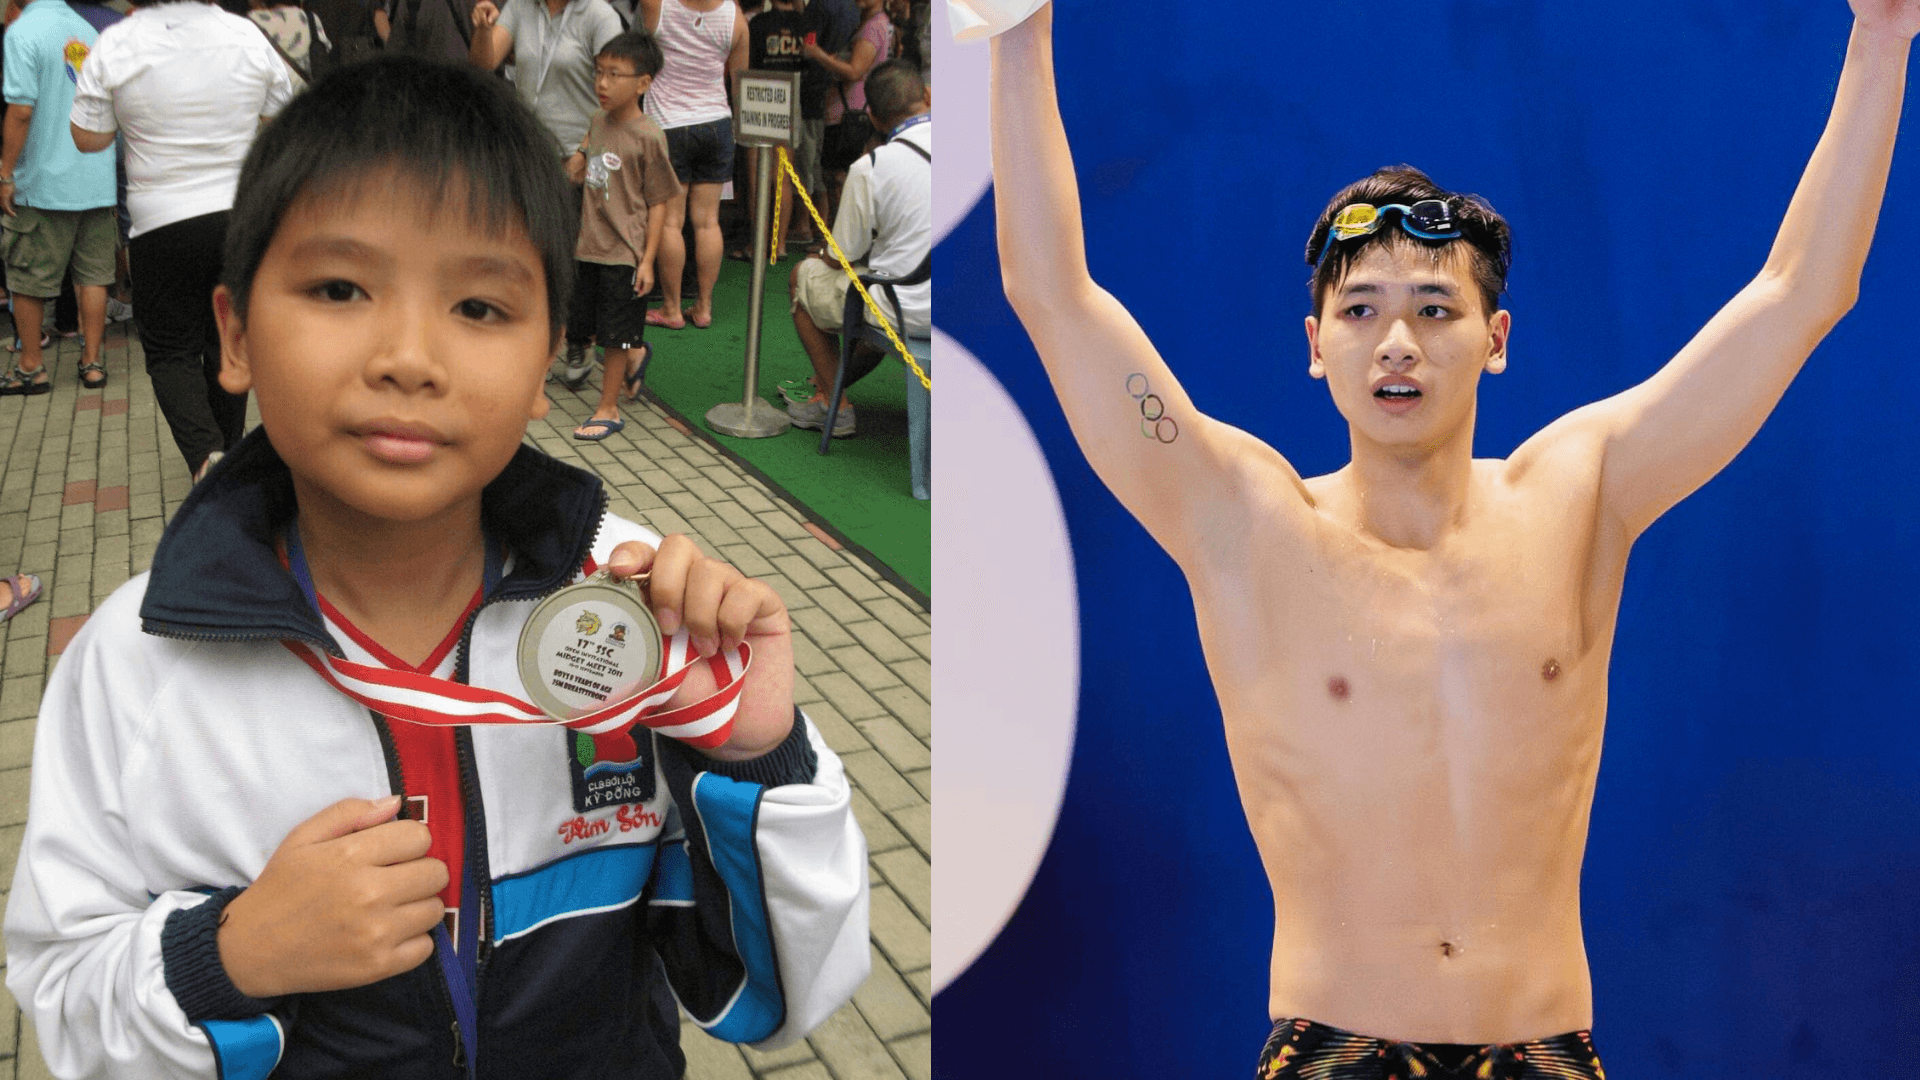 "Bơi lội giúp cải thiện giúp cải thiện thể trạng cơ thể" - Kim Sơn bồi hồi nhớ lại ký ức "ngày ấy và bây giờ"